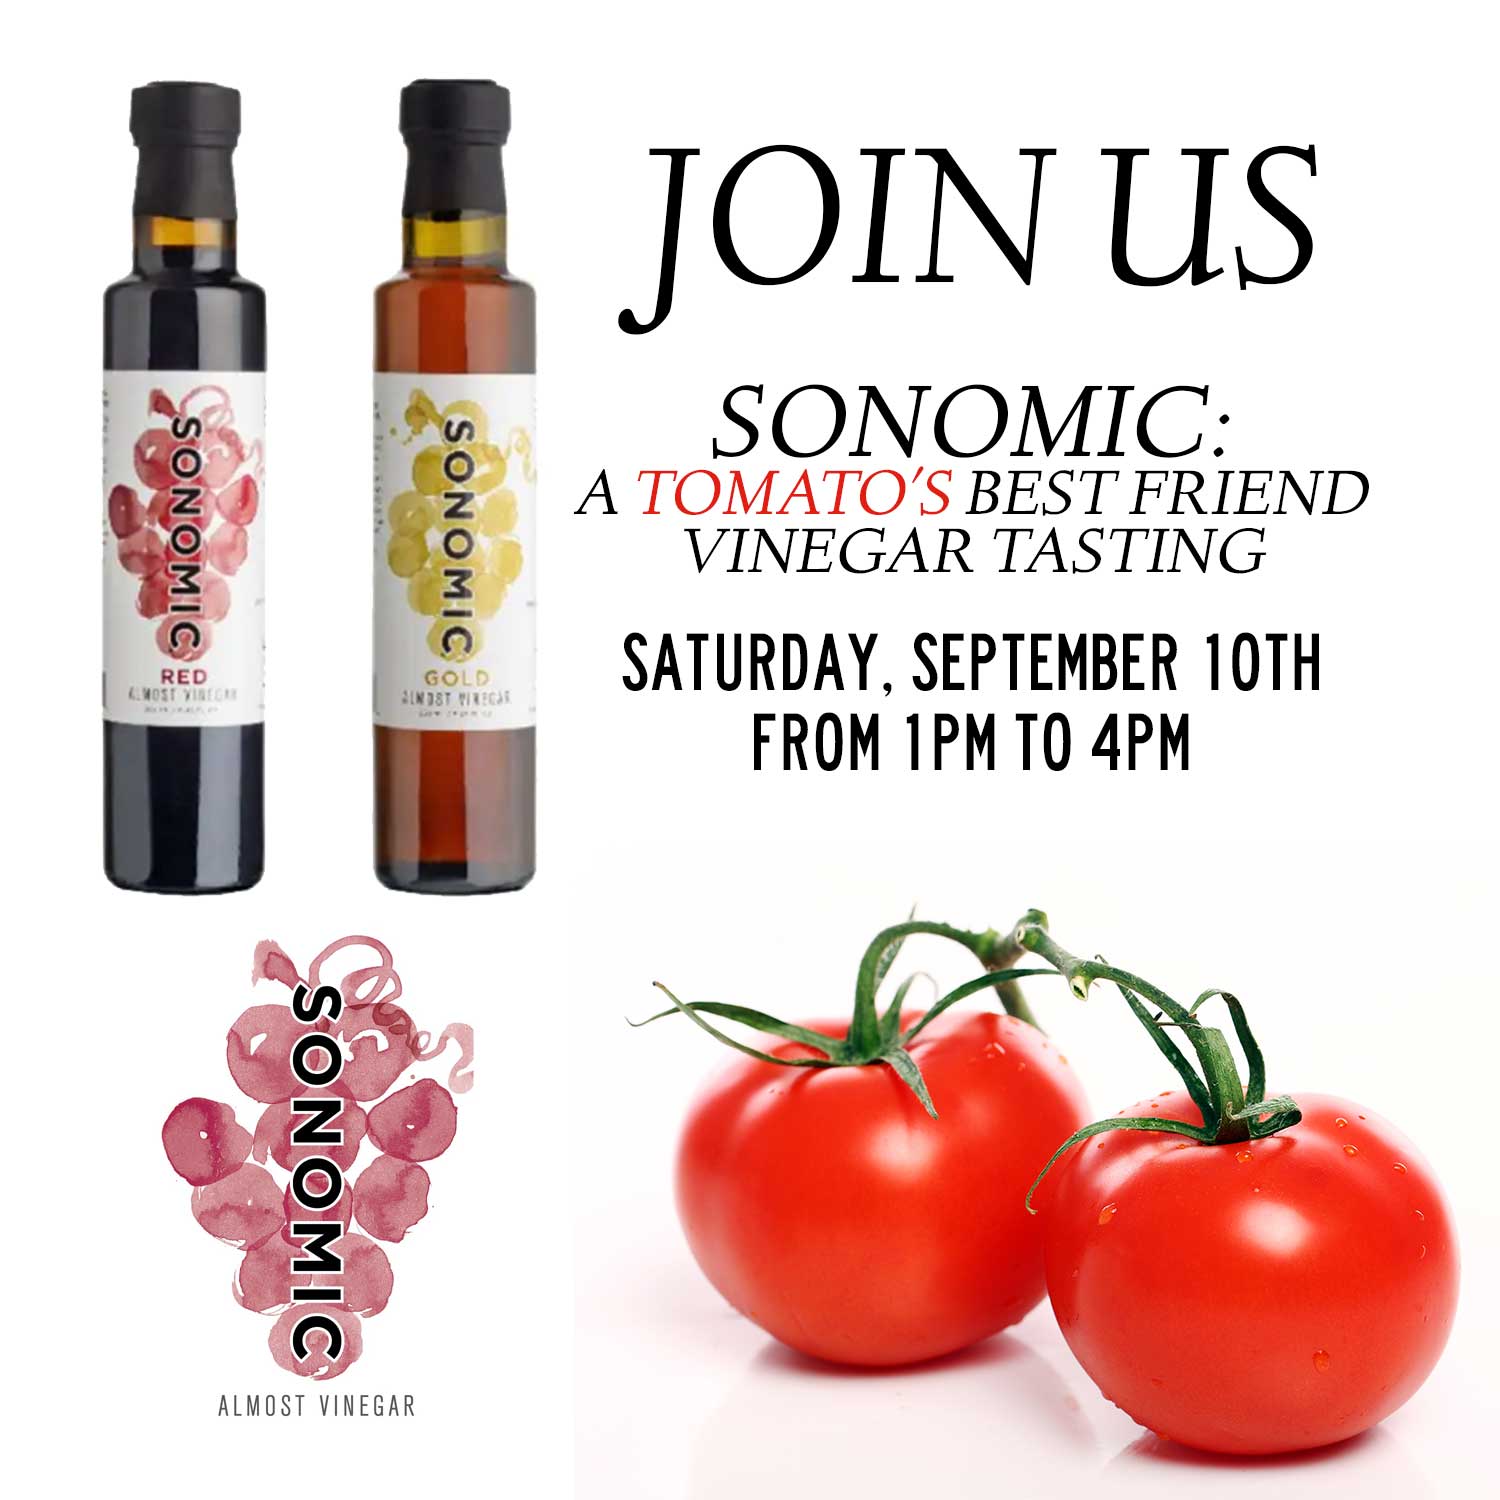 Sonomic Vinegar Tasting! Saturday, September 10th